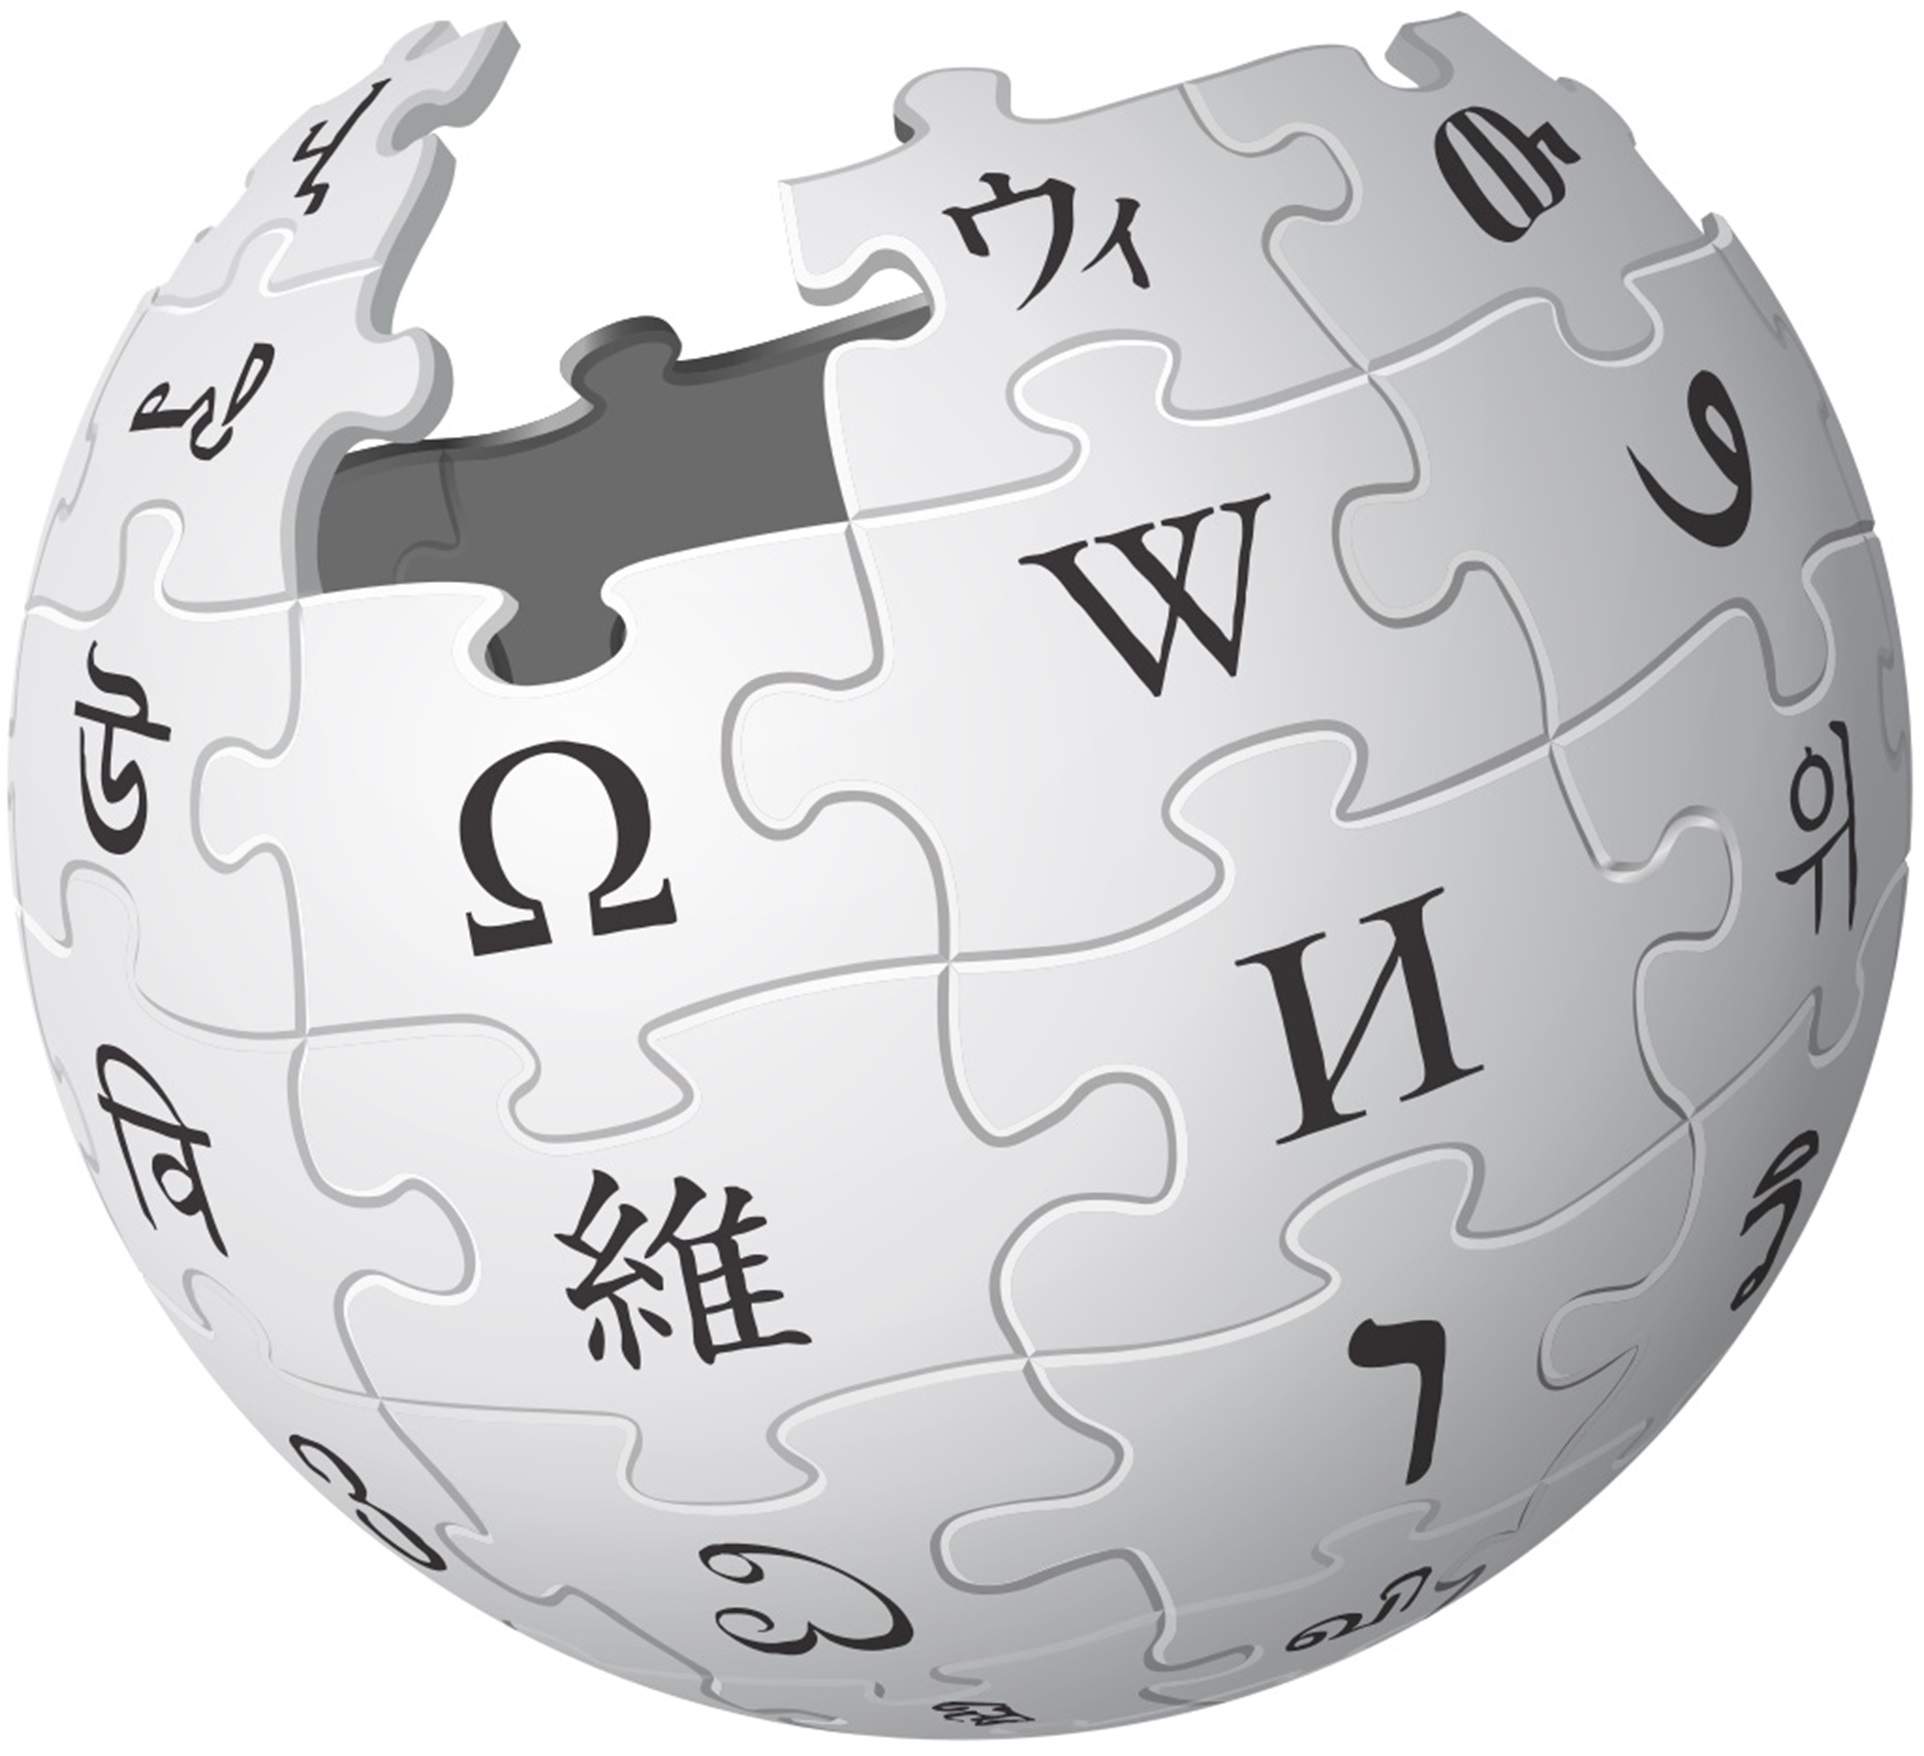 La Viquipèdia supera las 40.000 biografías de mujeres y alcanza el objetivo marcado el 8-M